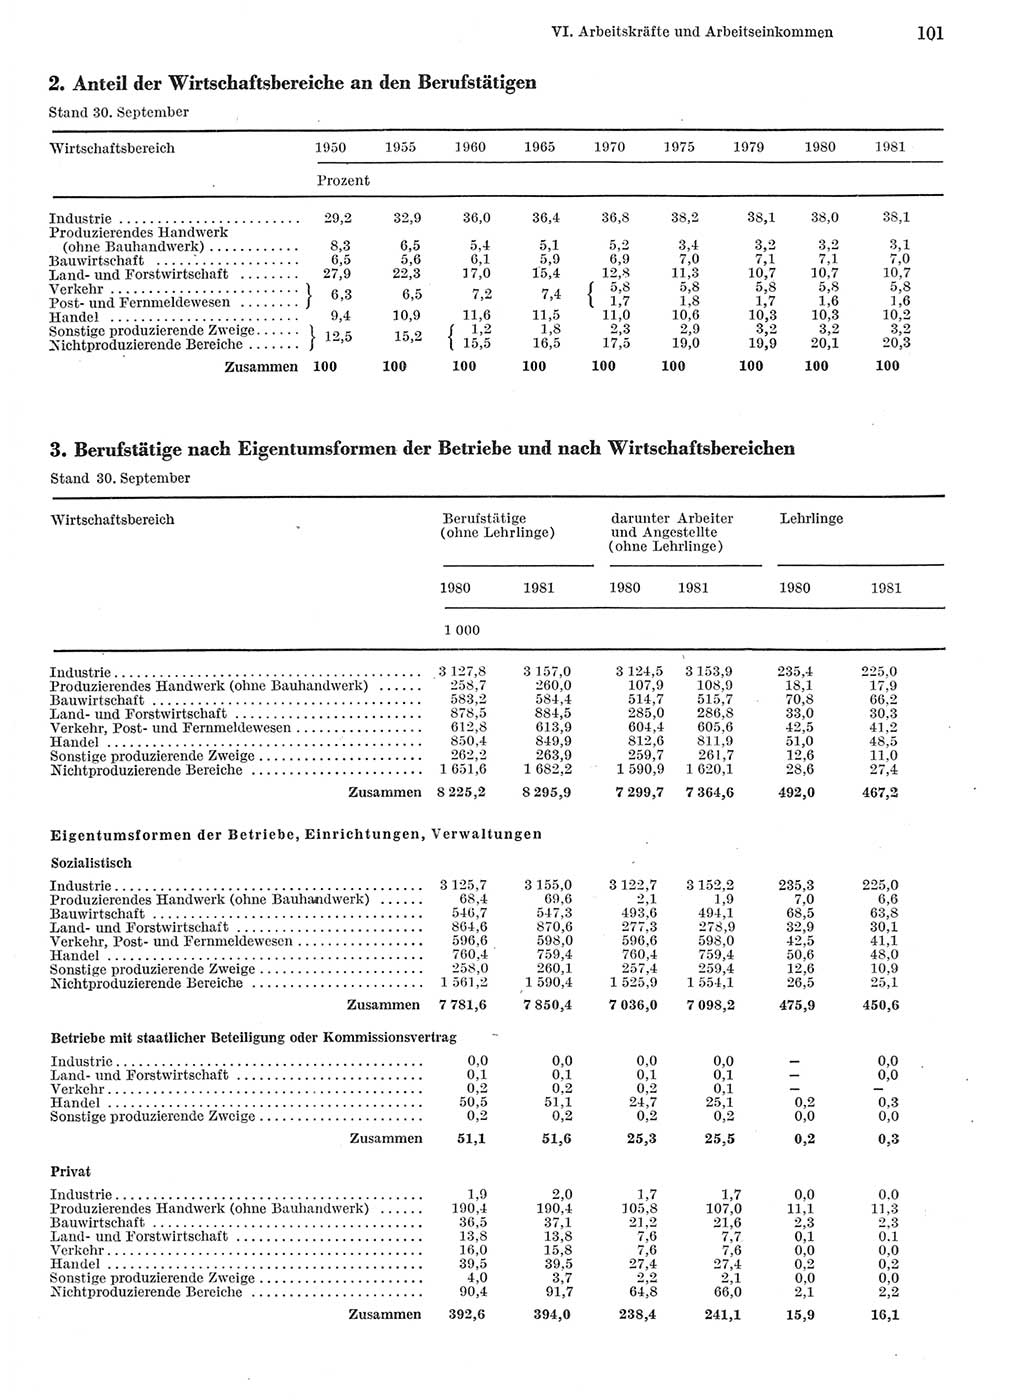 Statistisches Jahrbuch der Deutschen Demokratischen Republik (DDR) 1982, Seite 101 (Stat. Jb. DDR 1982, S. 101)